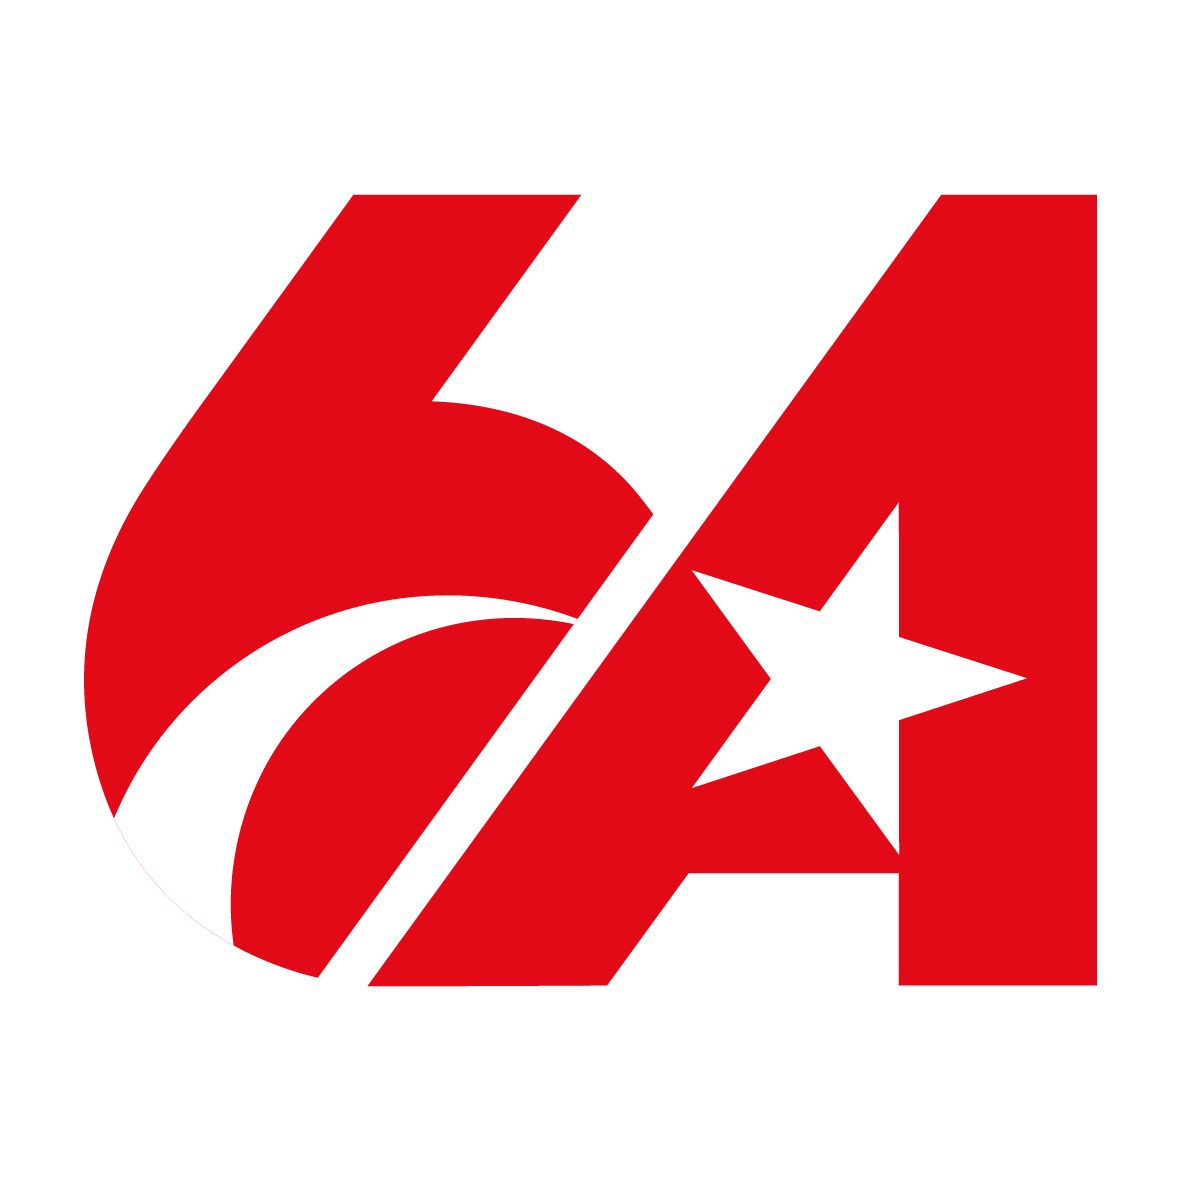 🛰Türkiye'nin ilk yerli ve milli haberleşme uydusu Türksat 6A için ay-yıldızlı logo belirlendi